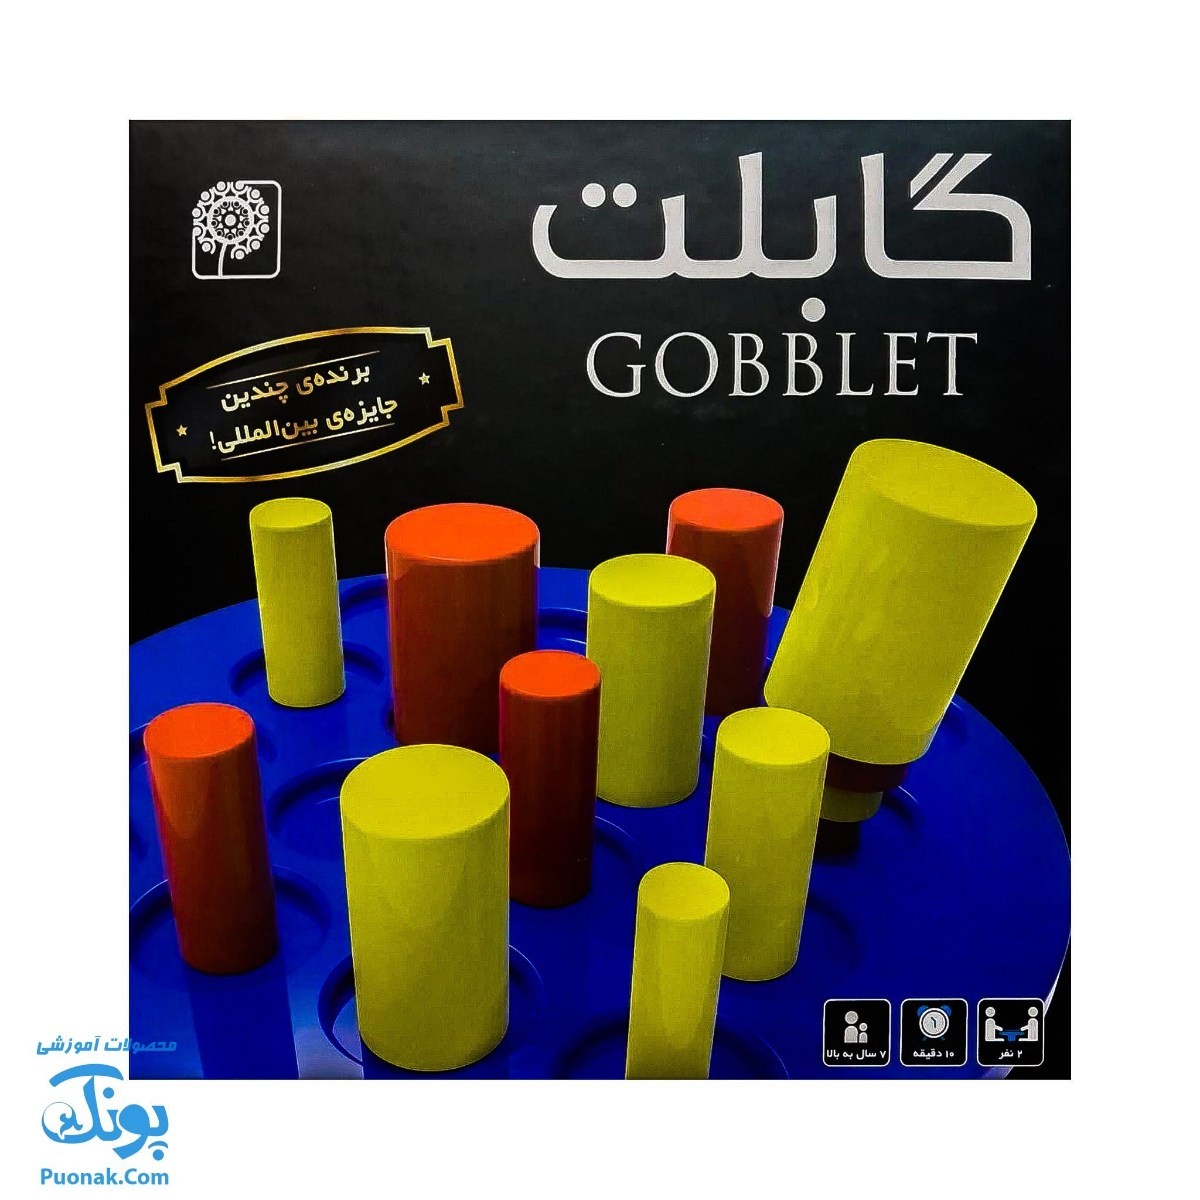 بازی فکری گابلت نهالک | Gobblet